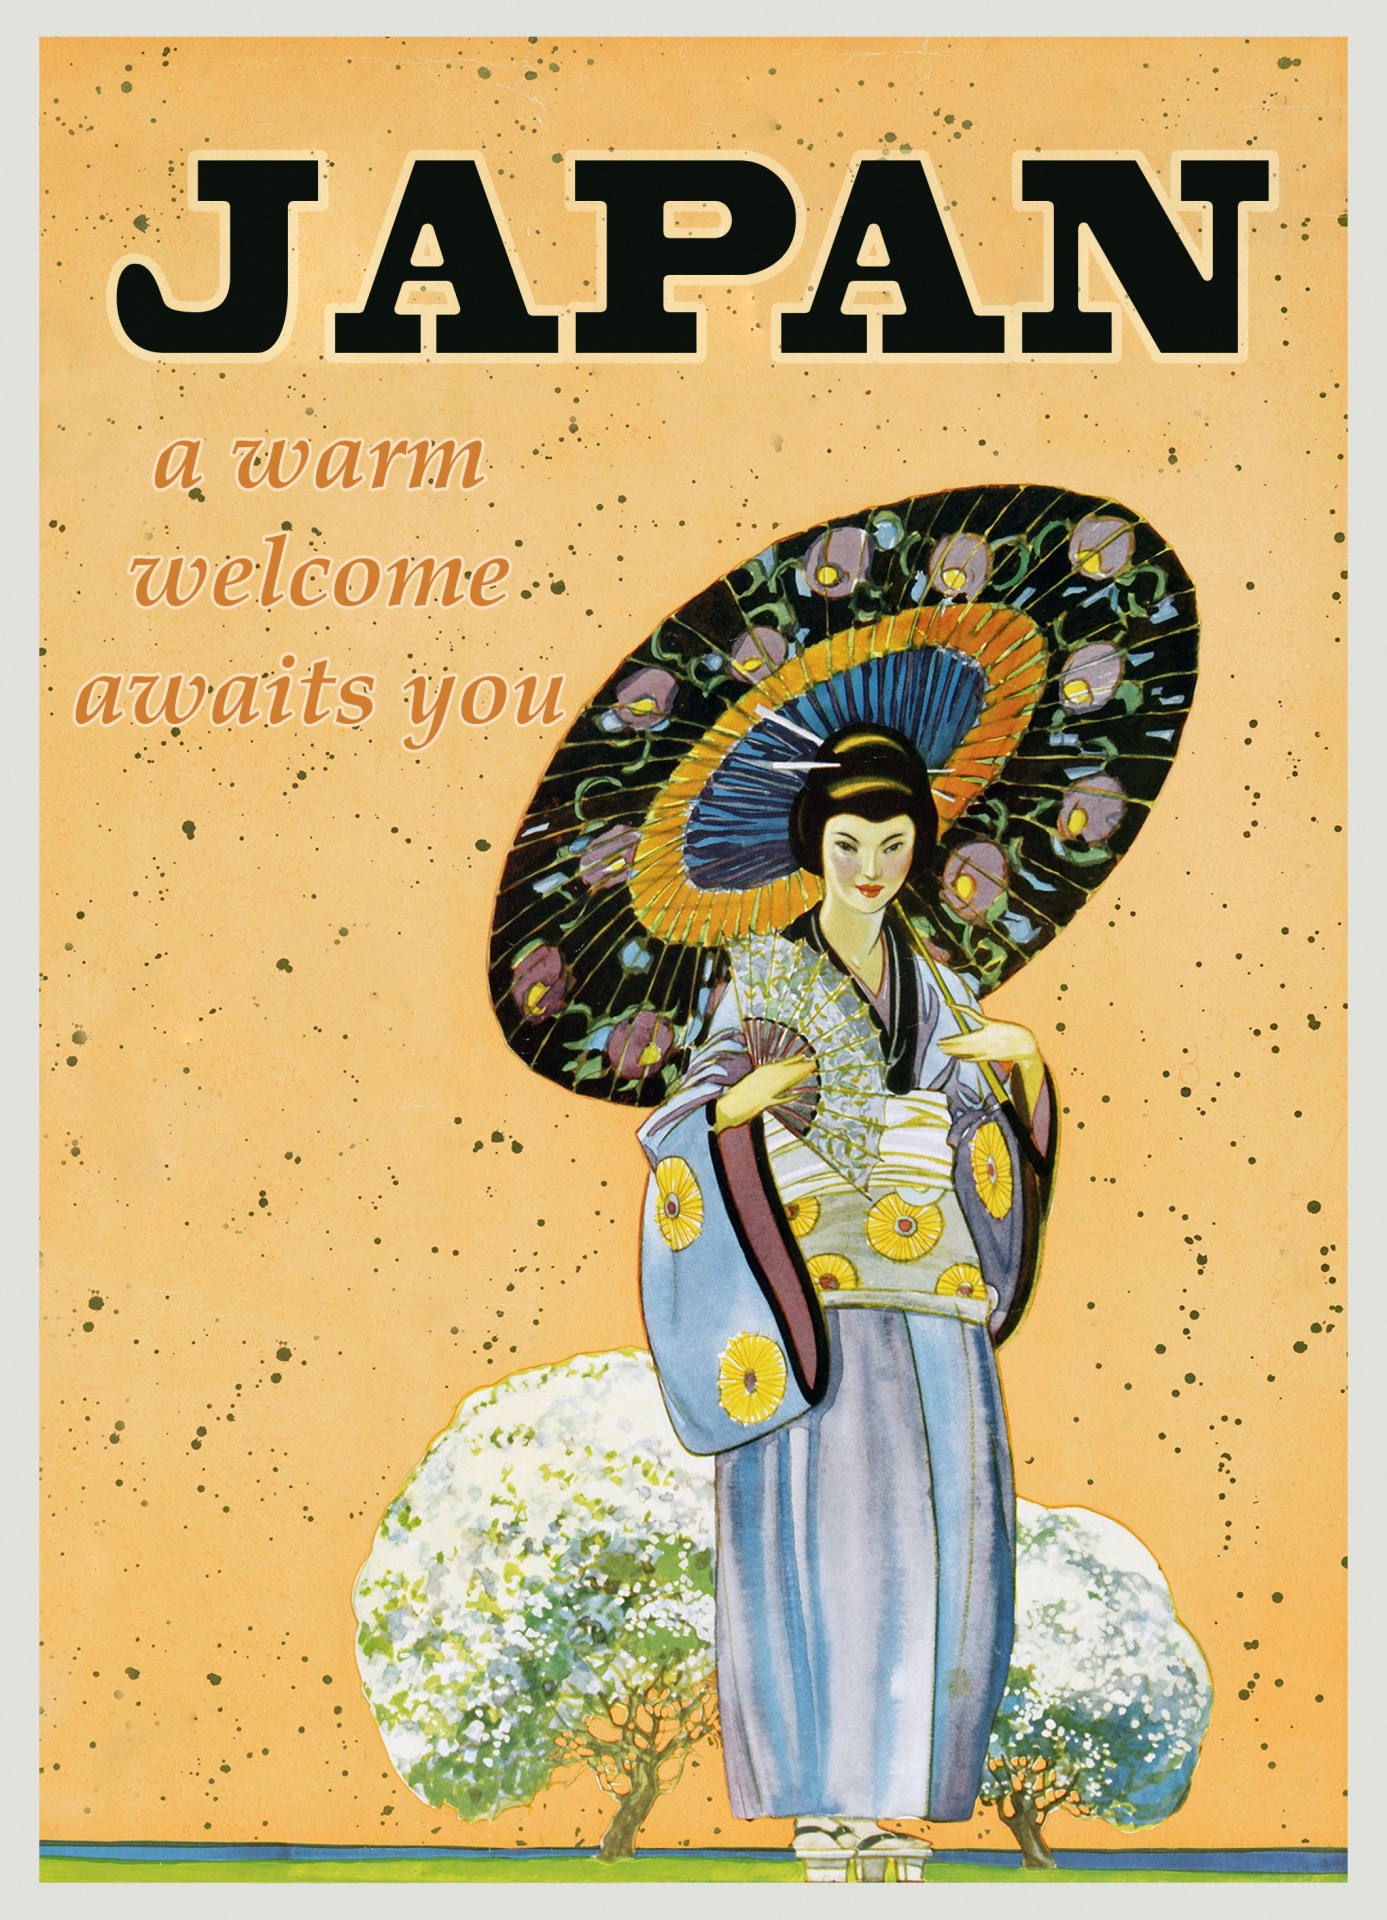 Japan Travel Poster Vintage